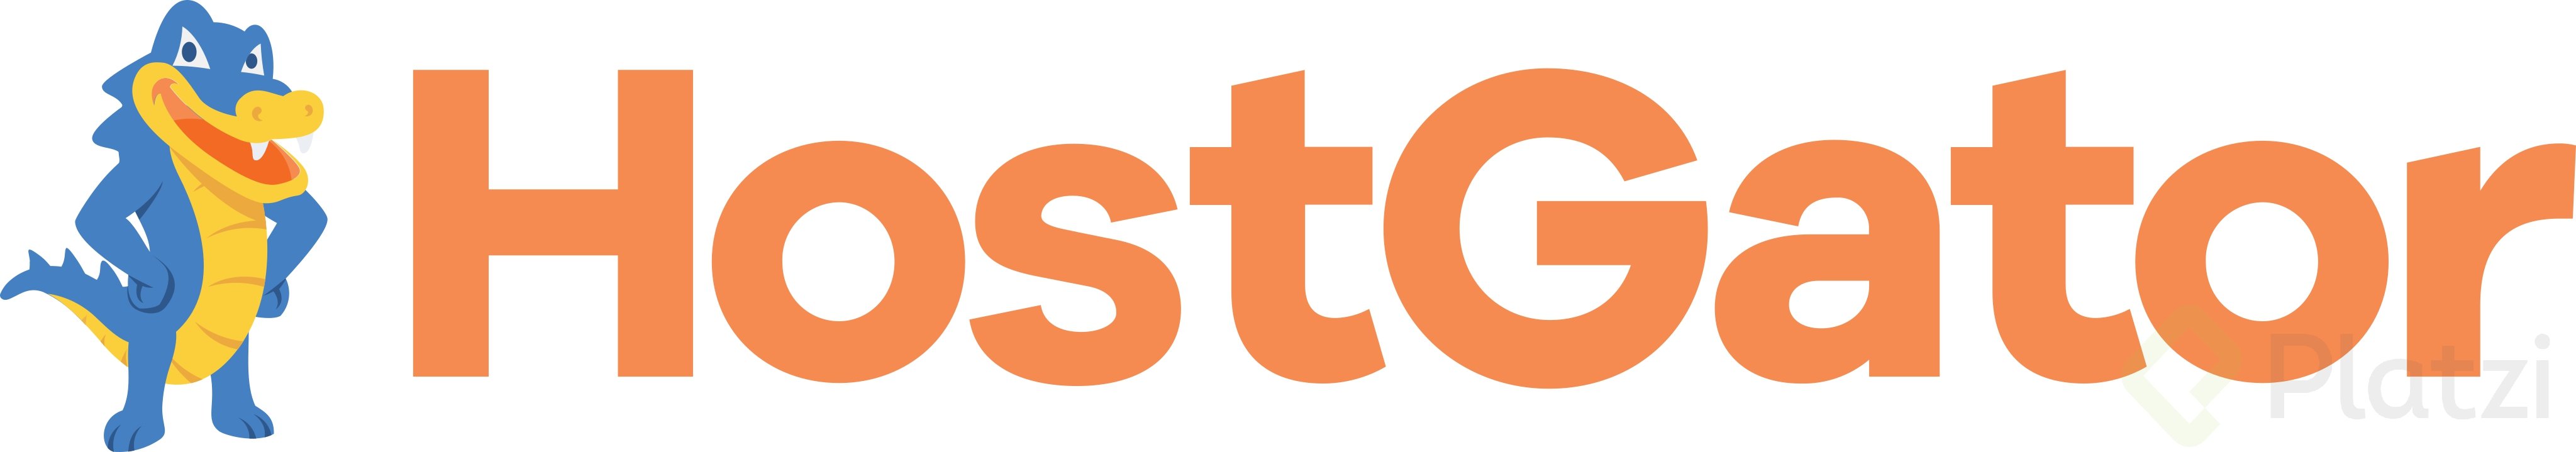 hostgator-logo.png